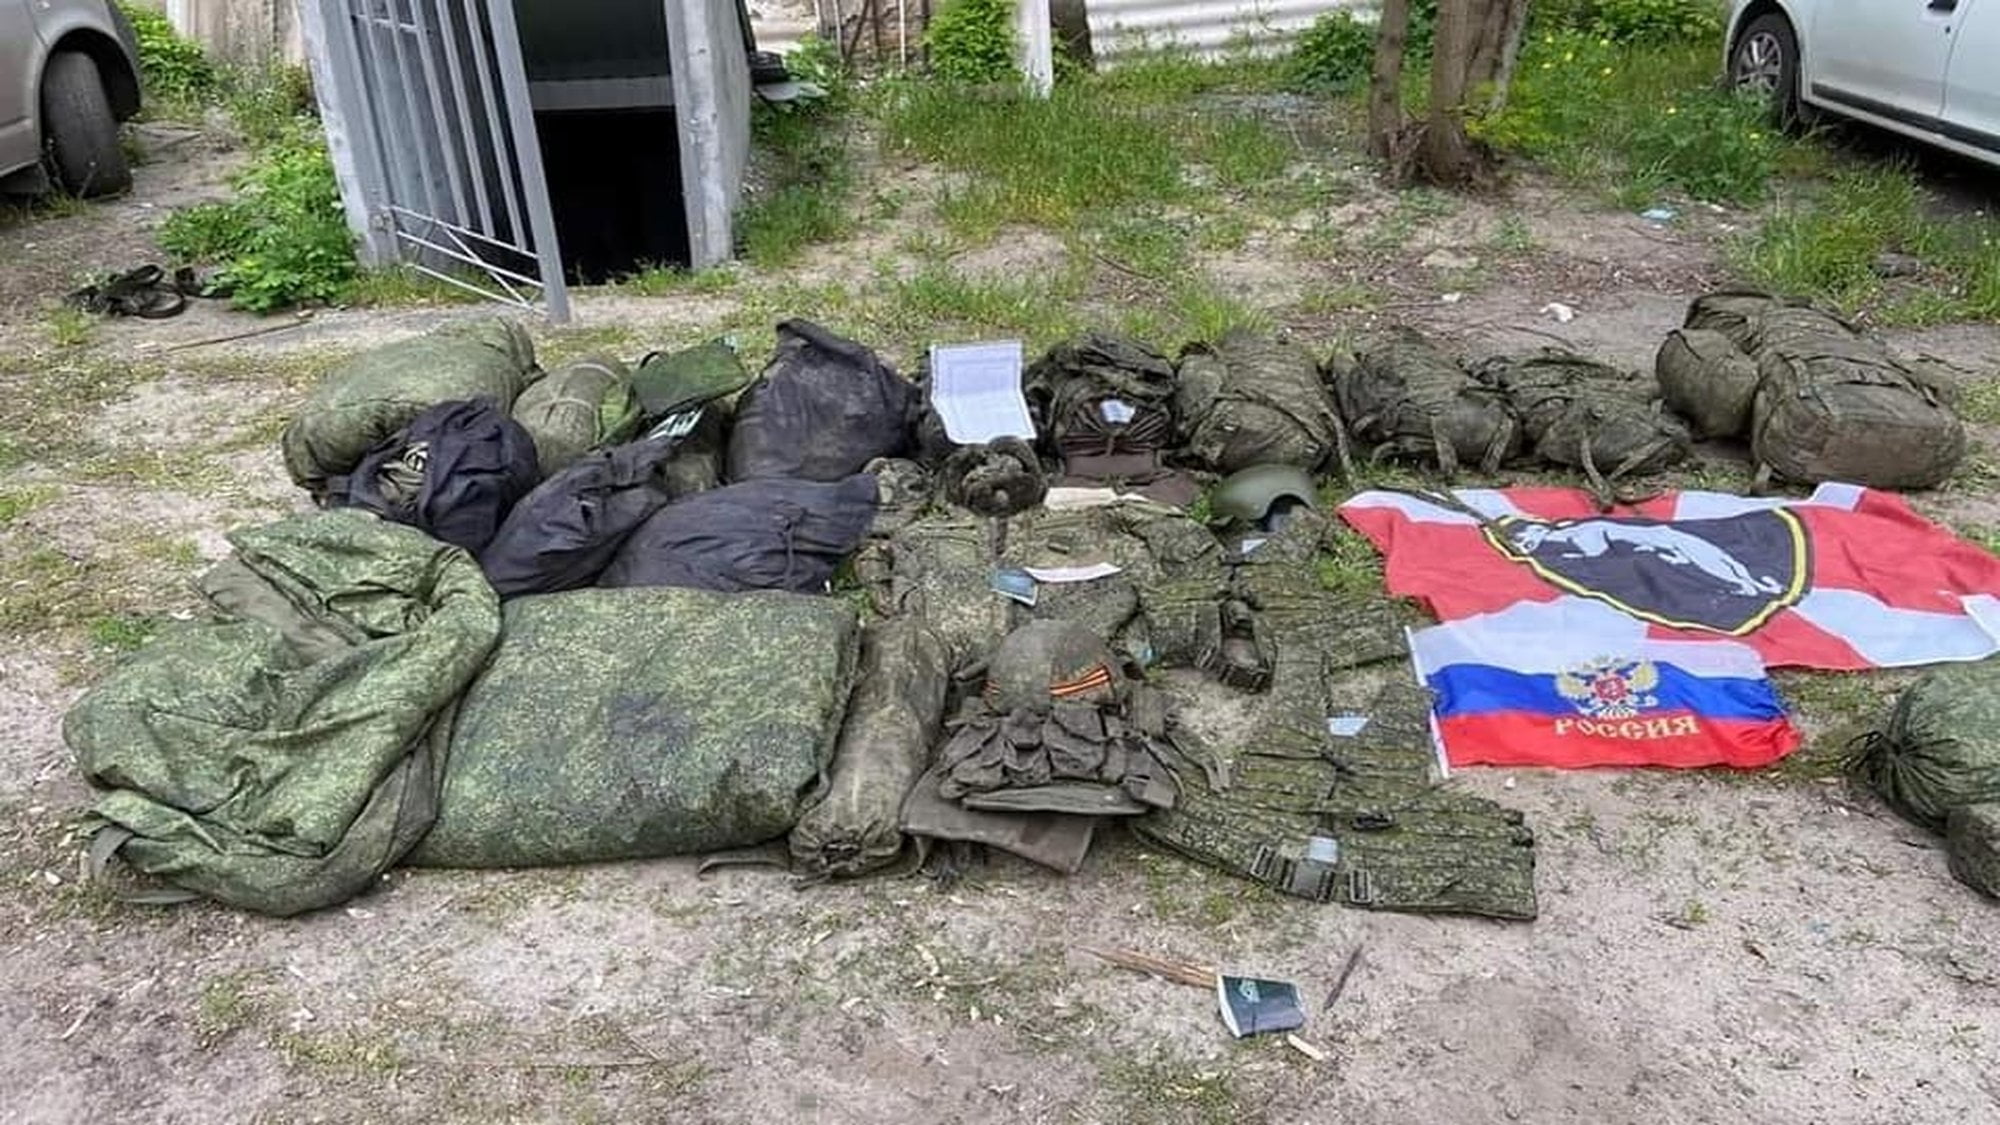 wyposażenie rosyjskich żołnierzy fot. Sztab Generalny Sił Zbrojnych Ukrainy